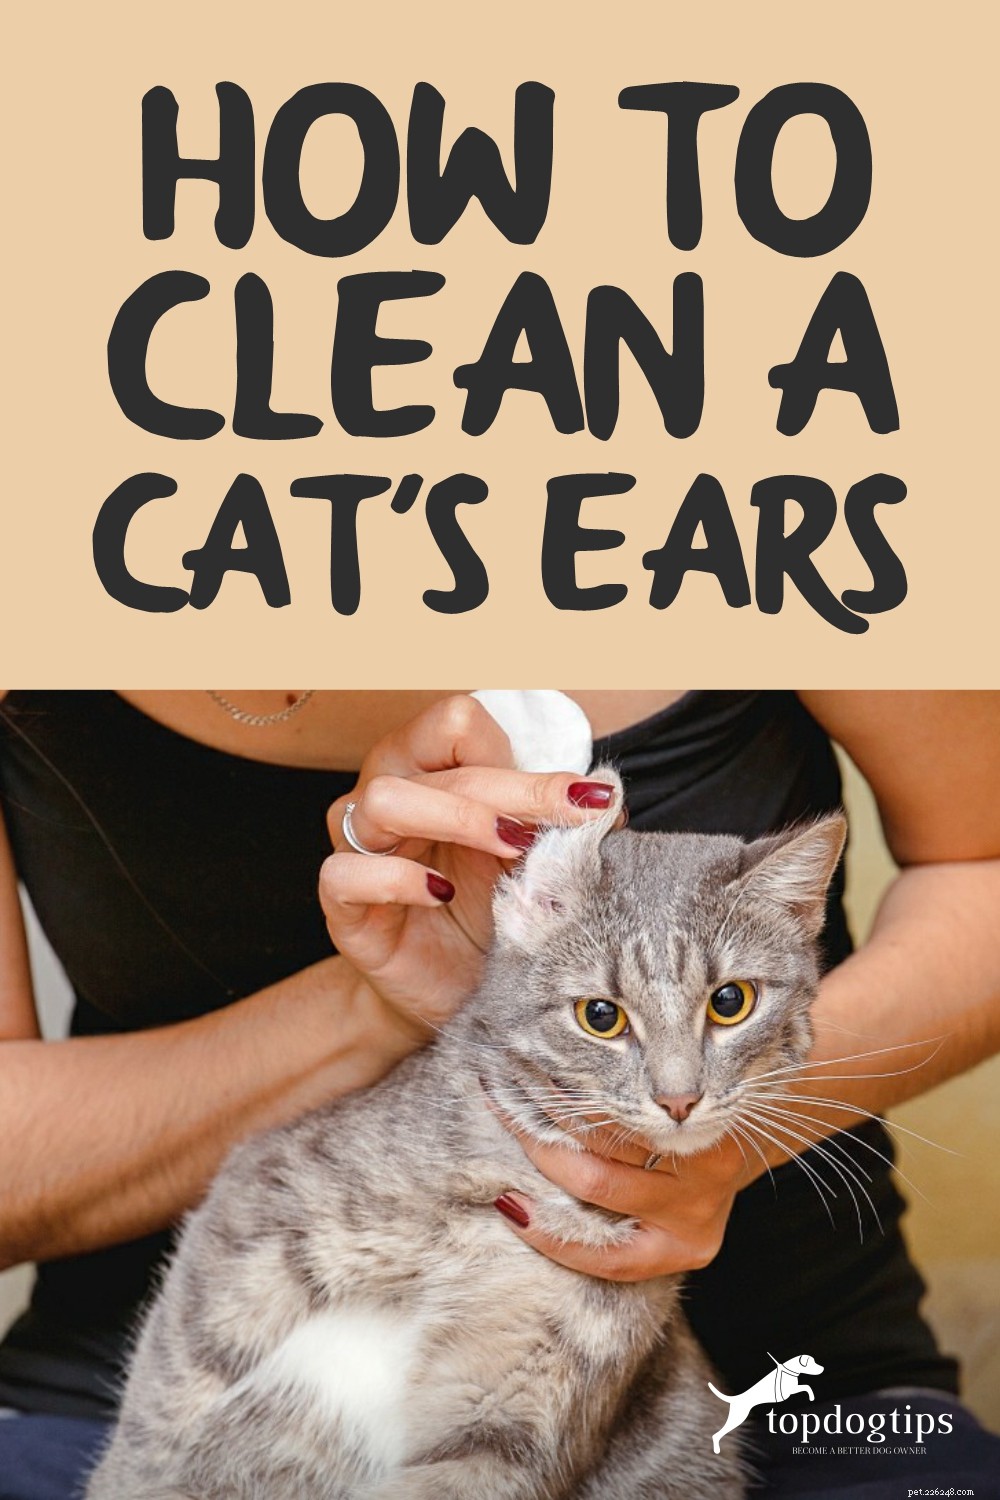 Come pulire le orecchie di un gatto